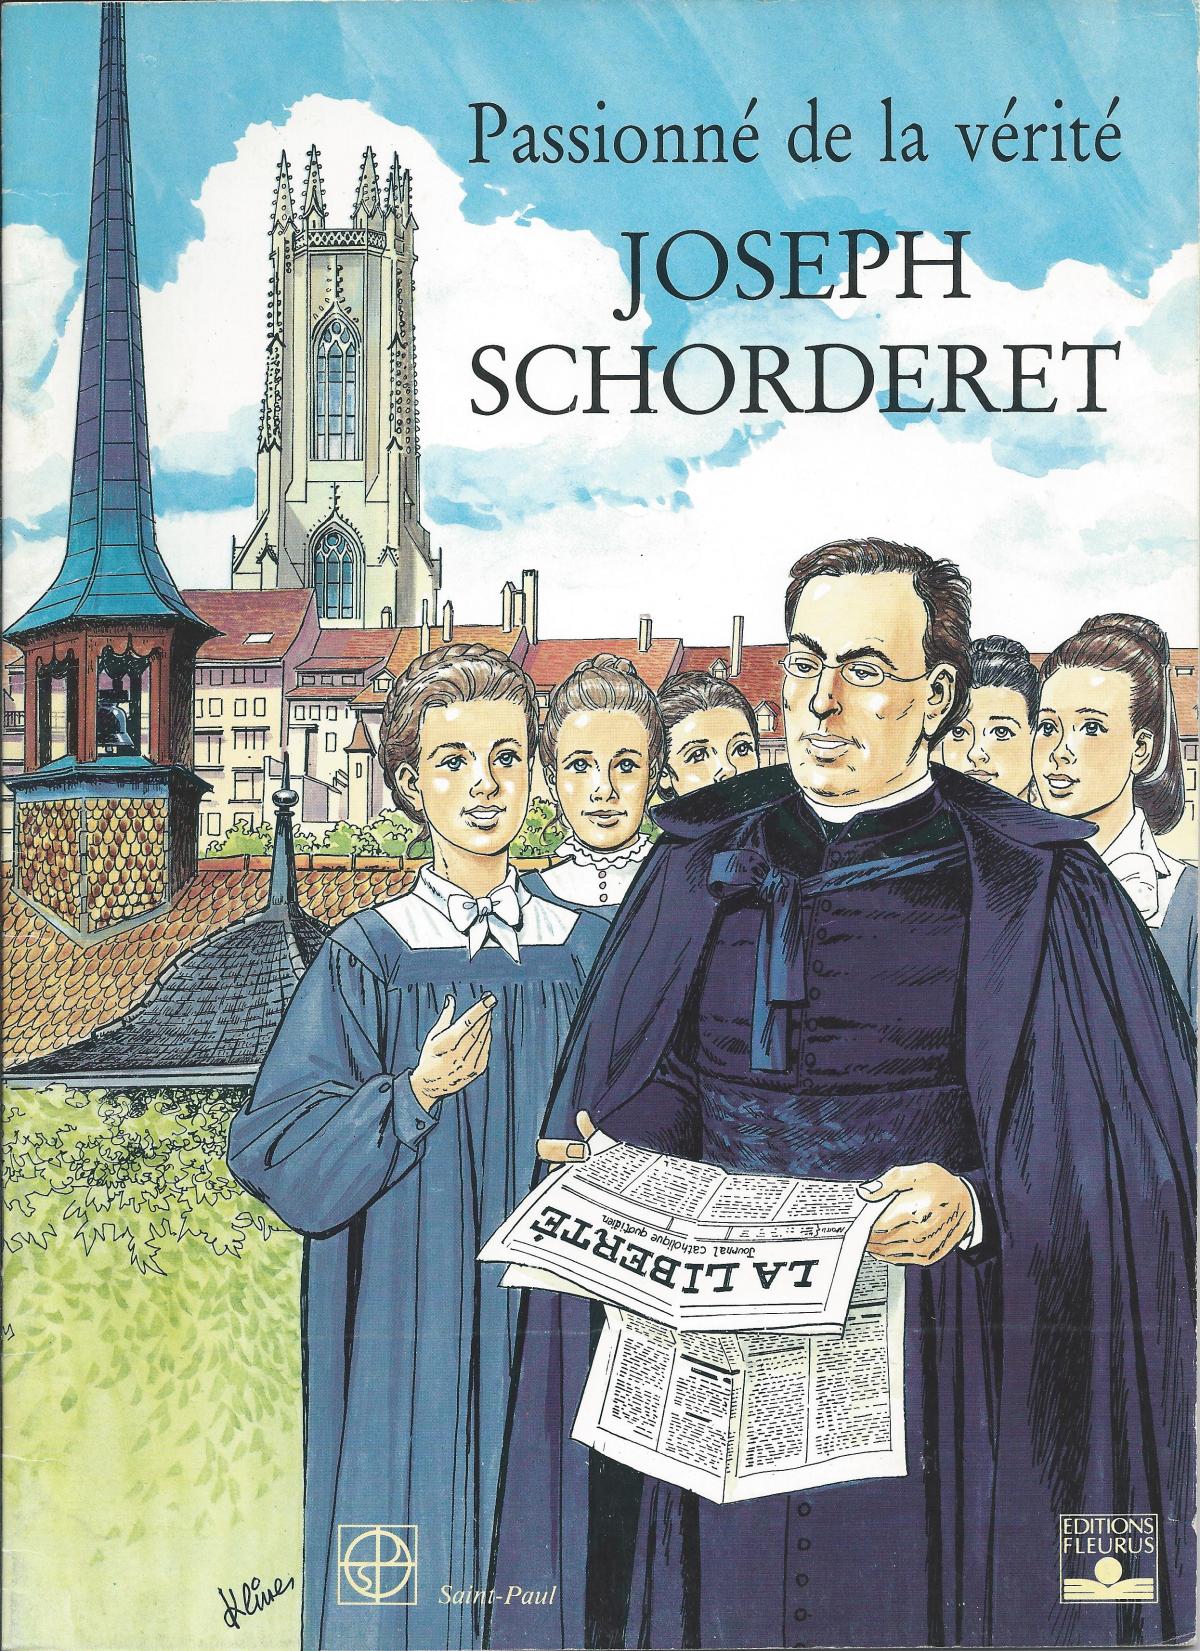 Passionné de la vérité, Joseph Schorderet